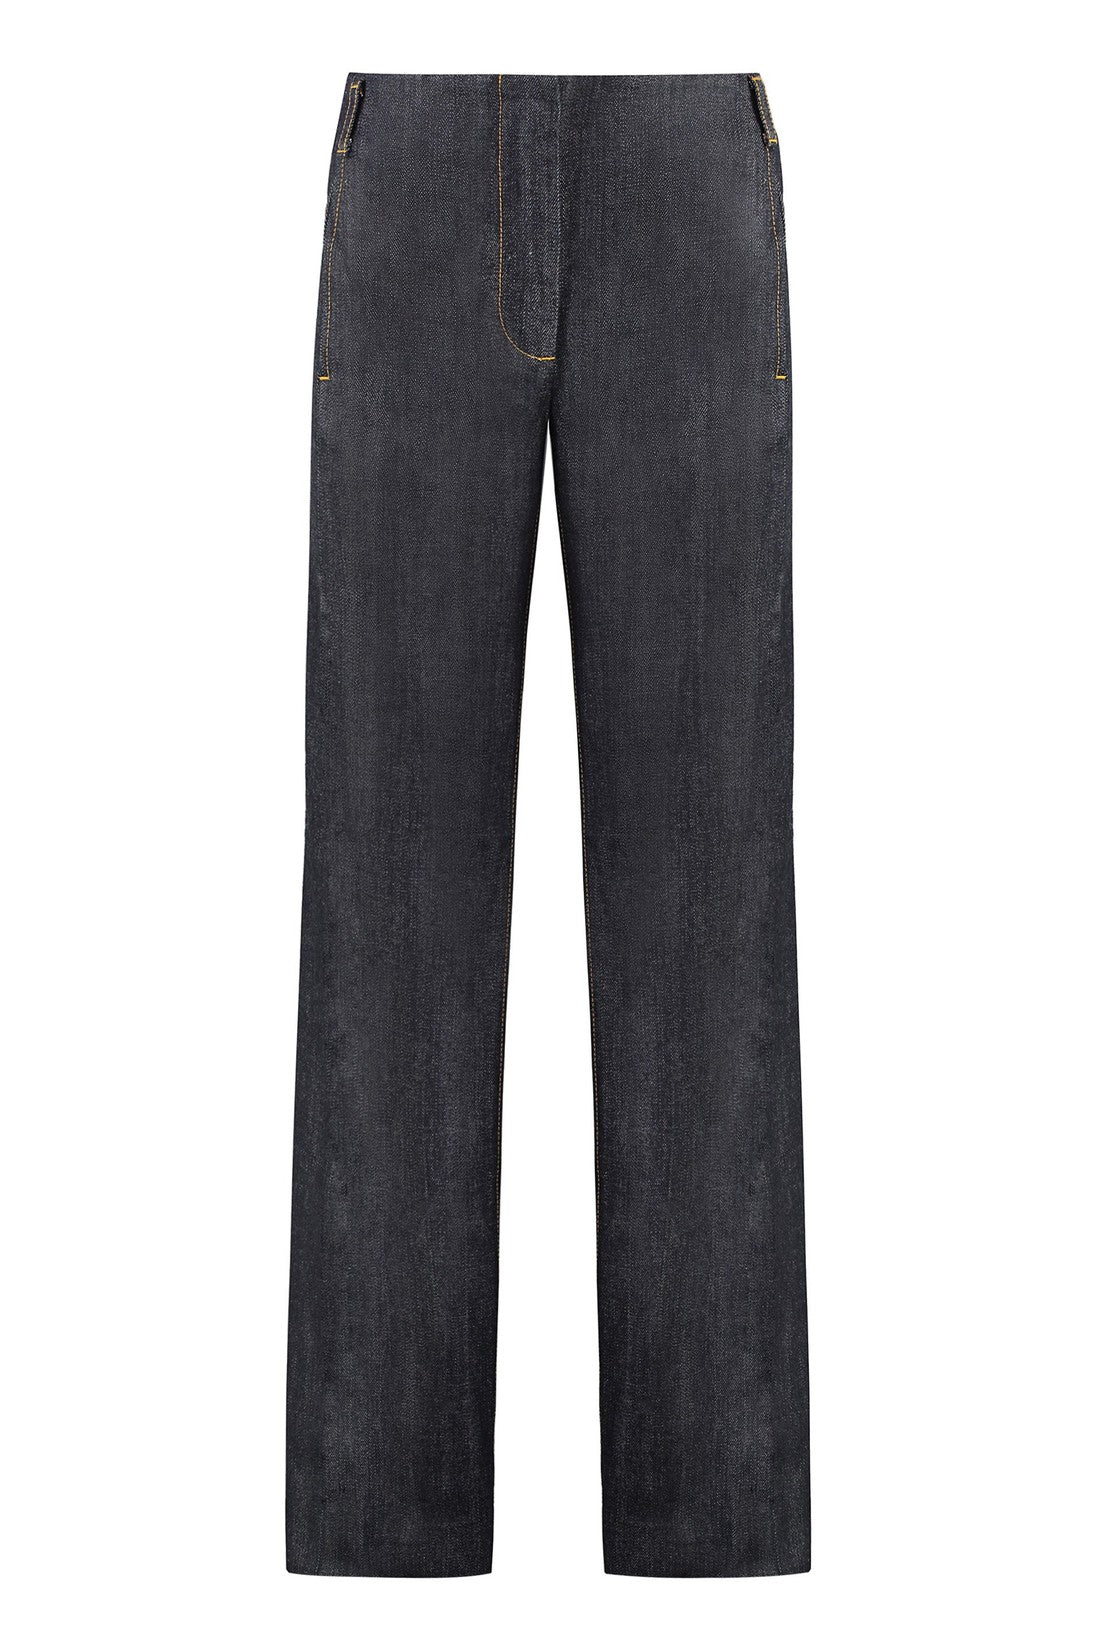 Tory Burch-OUTLET-SALE-Wide-leg jeans-ARCHIVIST